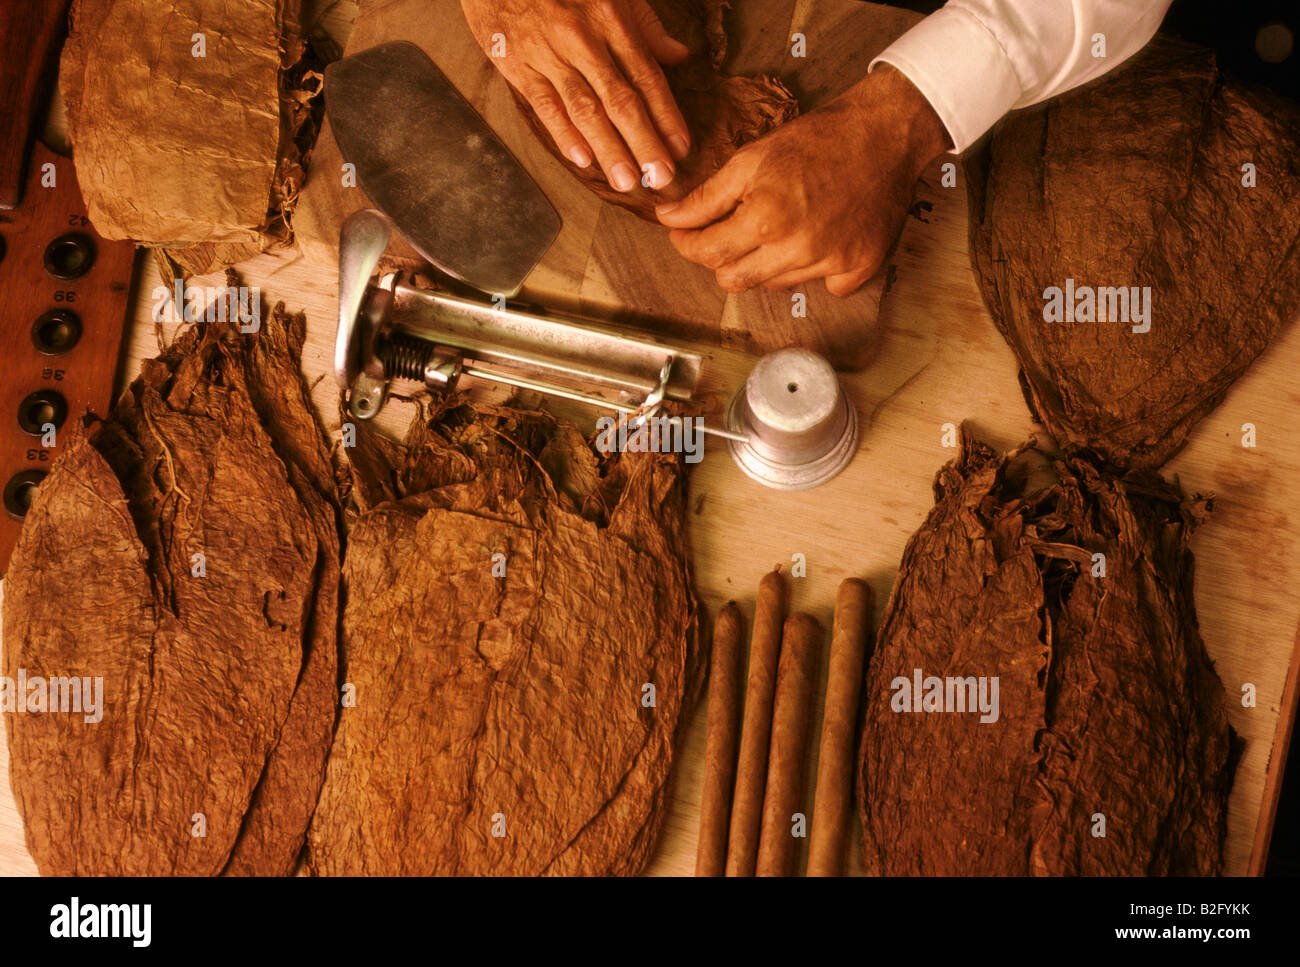 Manos a la obra haciendo puros en una fábrica en la provincia de Pinar del Río, Cuba Foto de stock